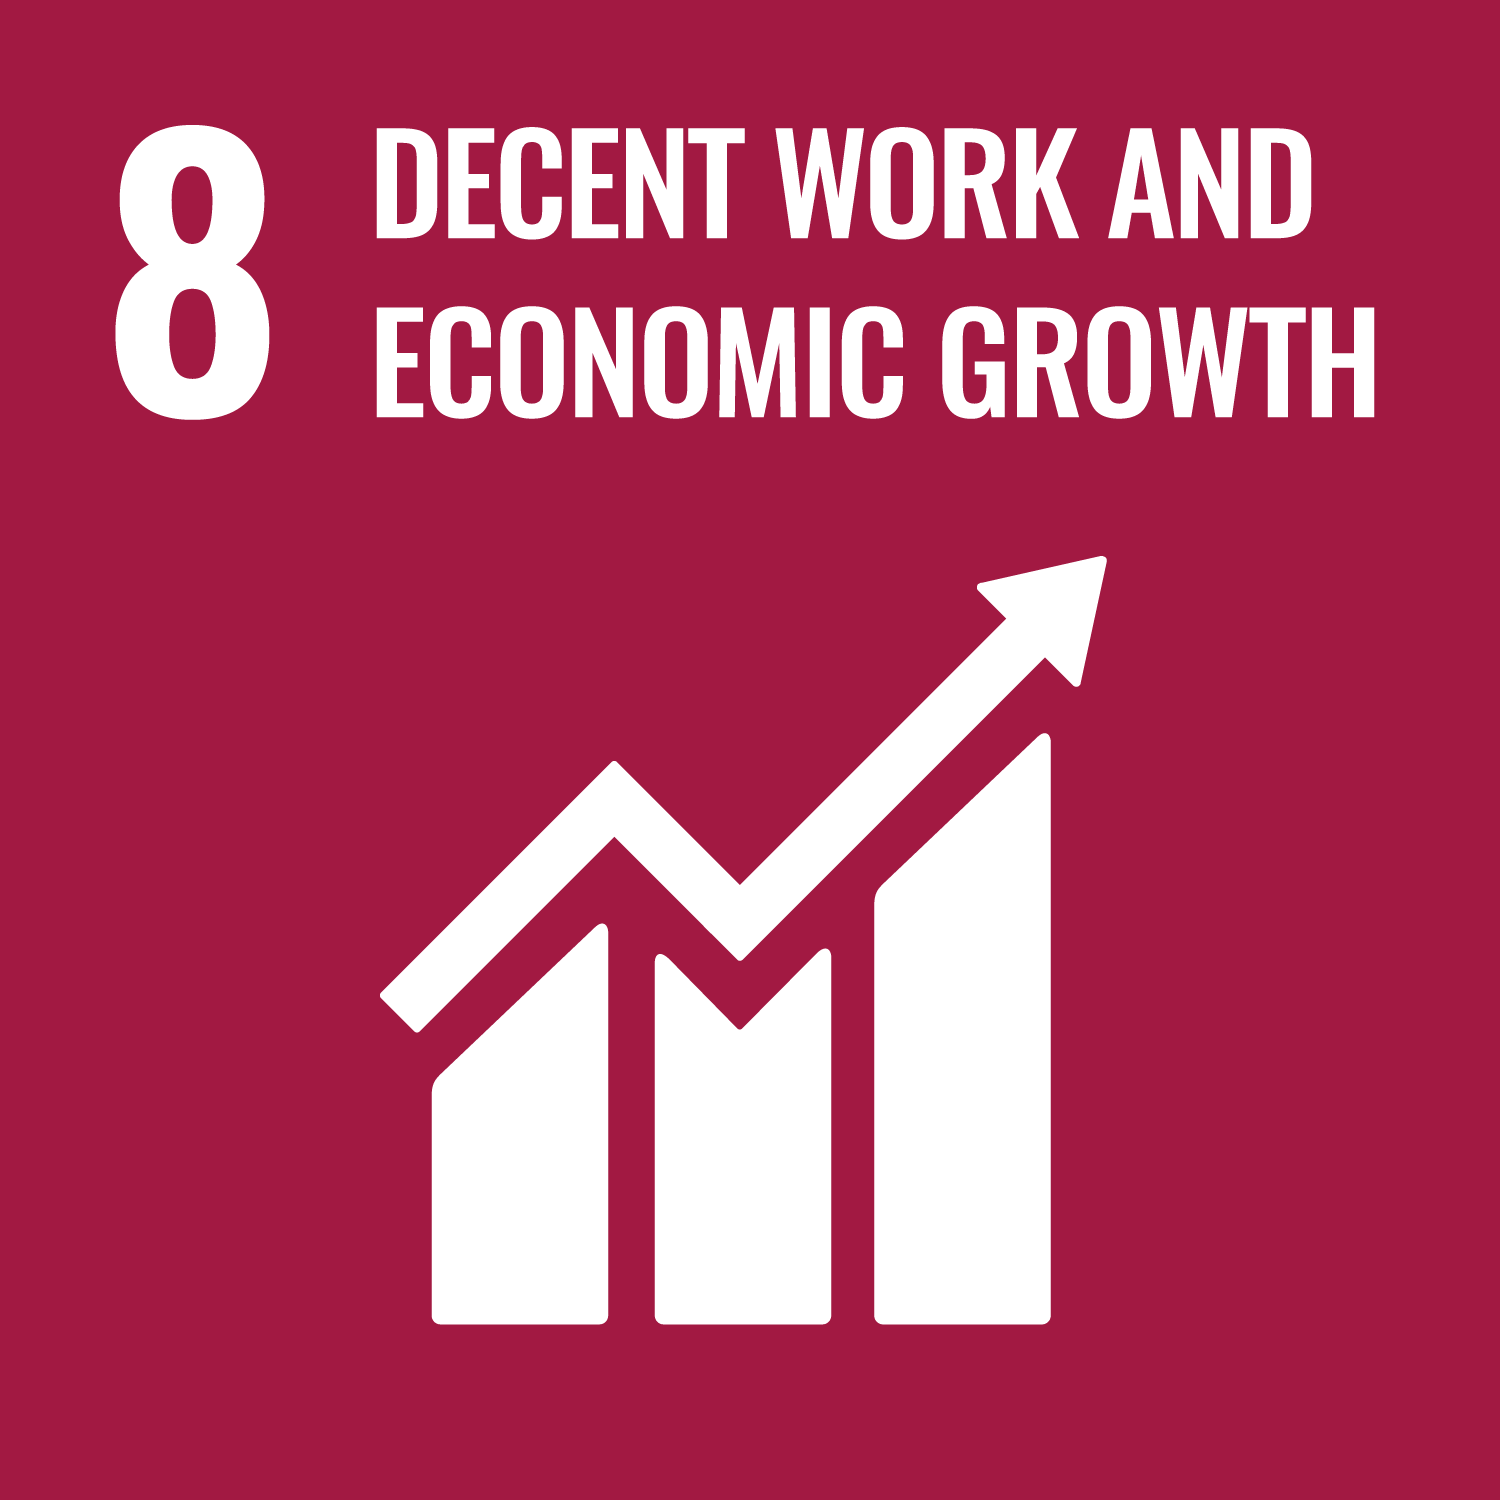 Nachhaltiges Wirtschaftswachstum und menschenwürdige Arbeit für alle – dauerhaftes, breitenwirksames und nachhaltiges Wirtschaftswachstum, produktive Vollbeschäftigung und menschenwürdige Arbeit für alle fördern.